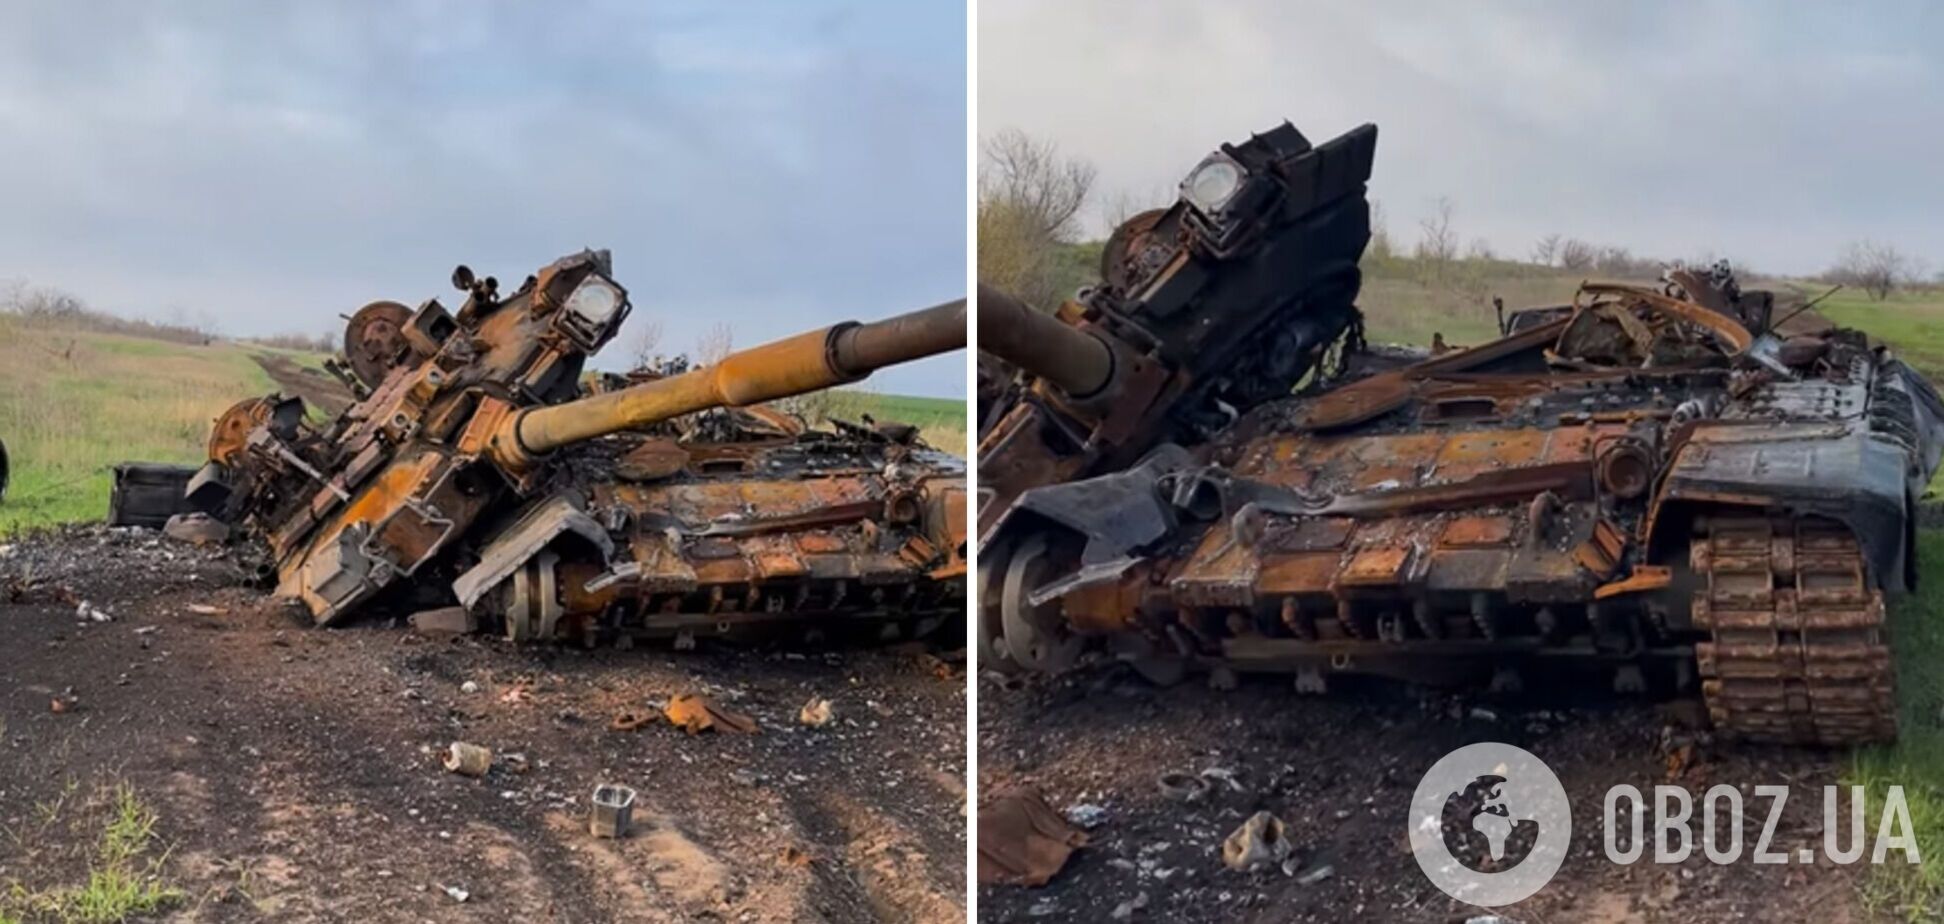 Превратили в металлолом: в ВСУ показали уничтоженный российский танк. Видео